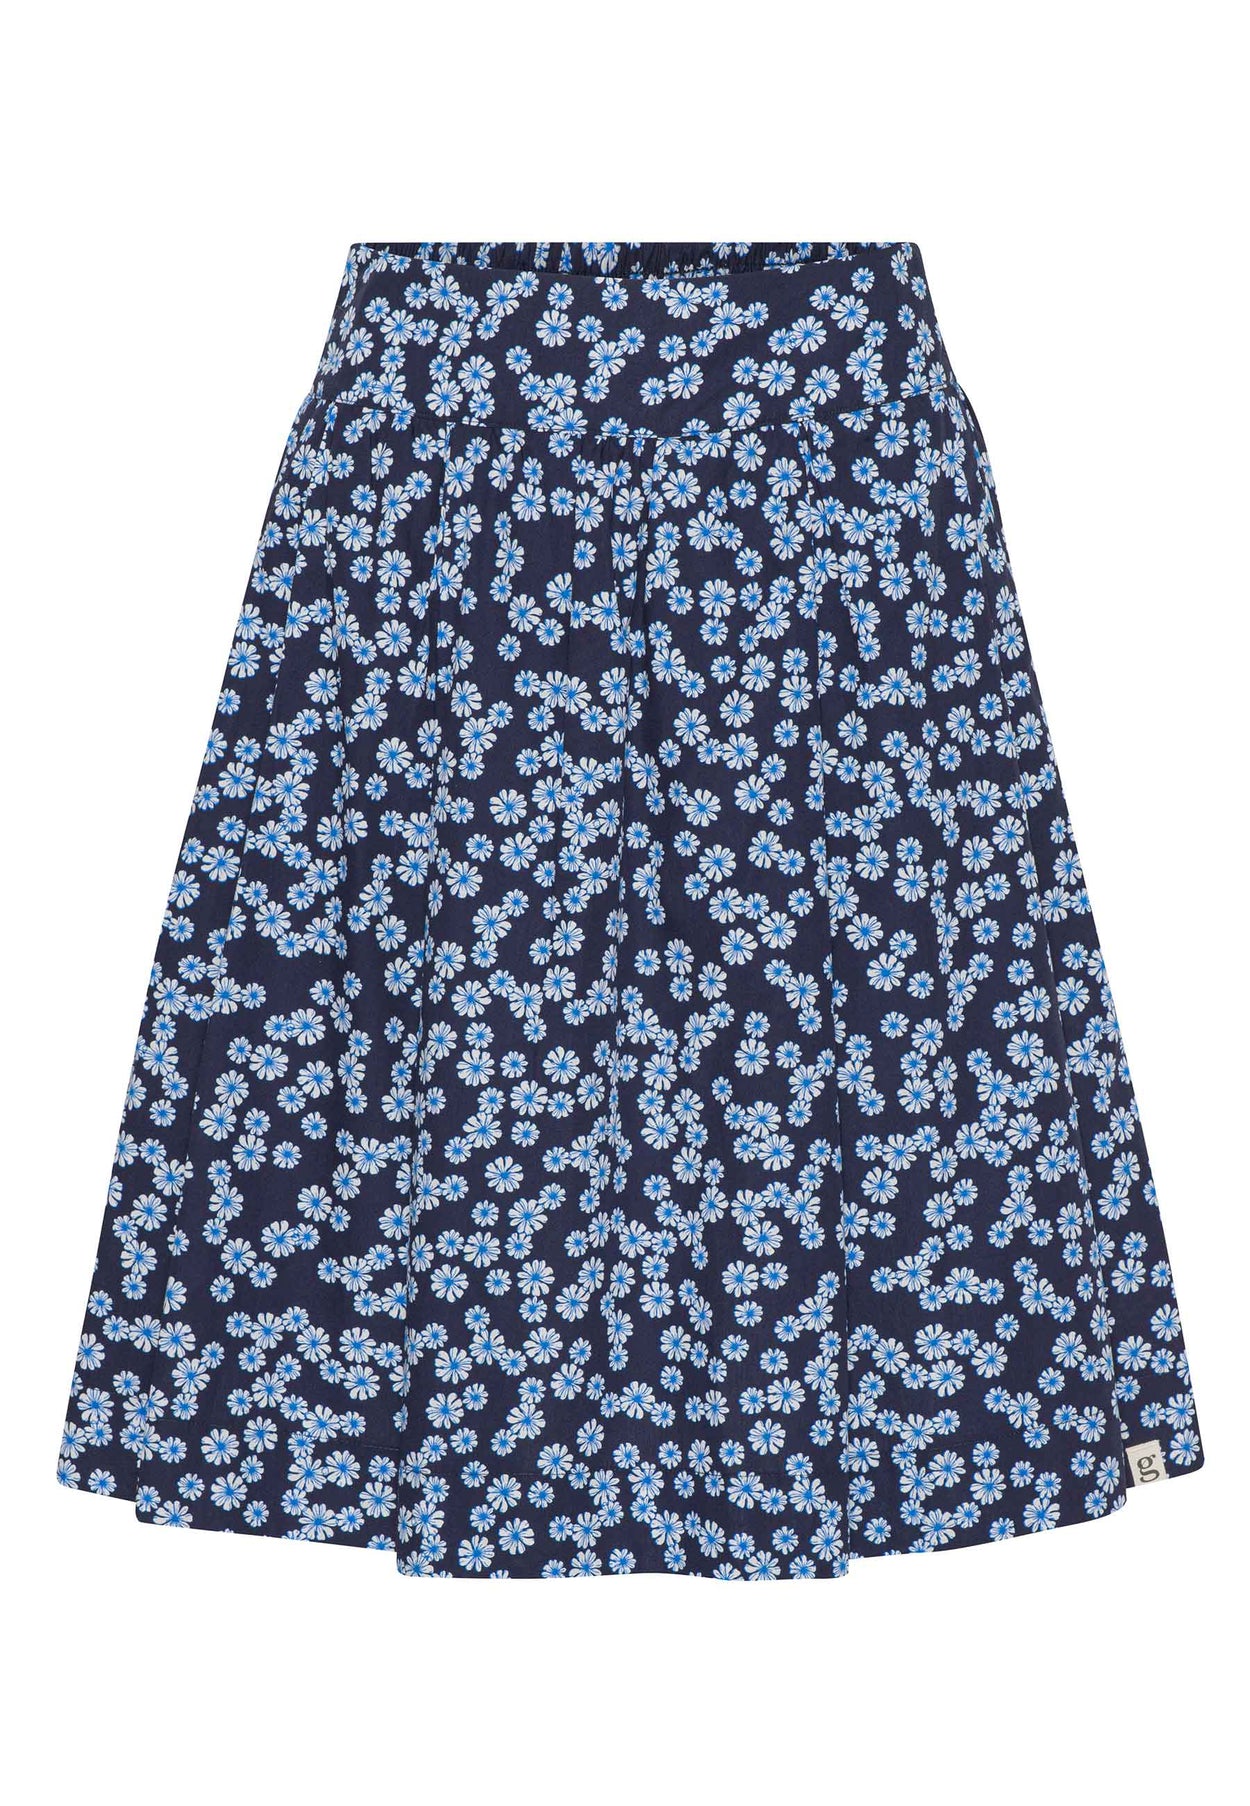 GROBUND Svala nederdelen - den korte i blå med blomster